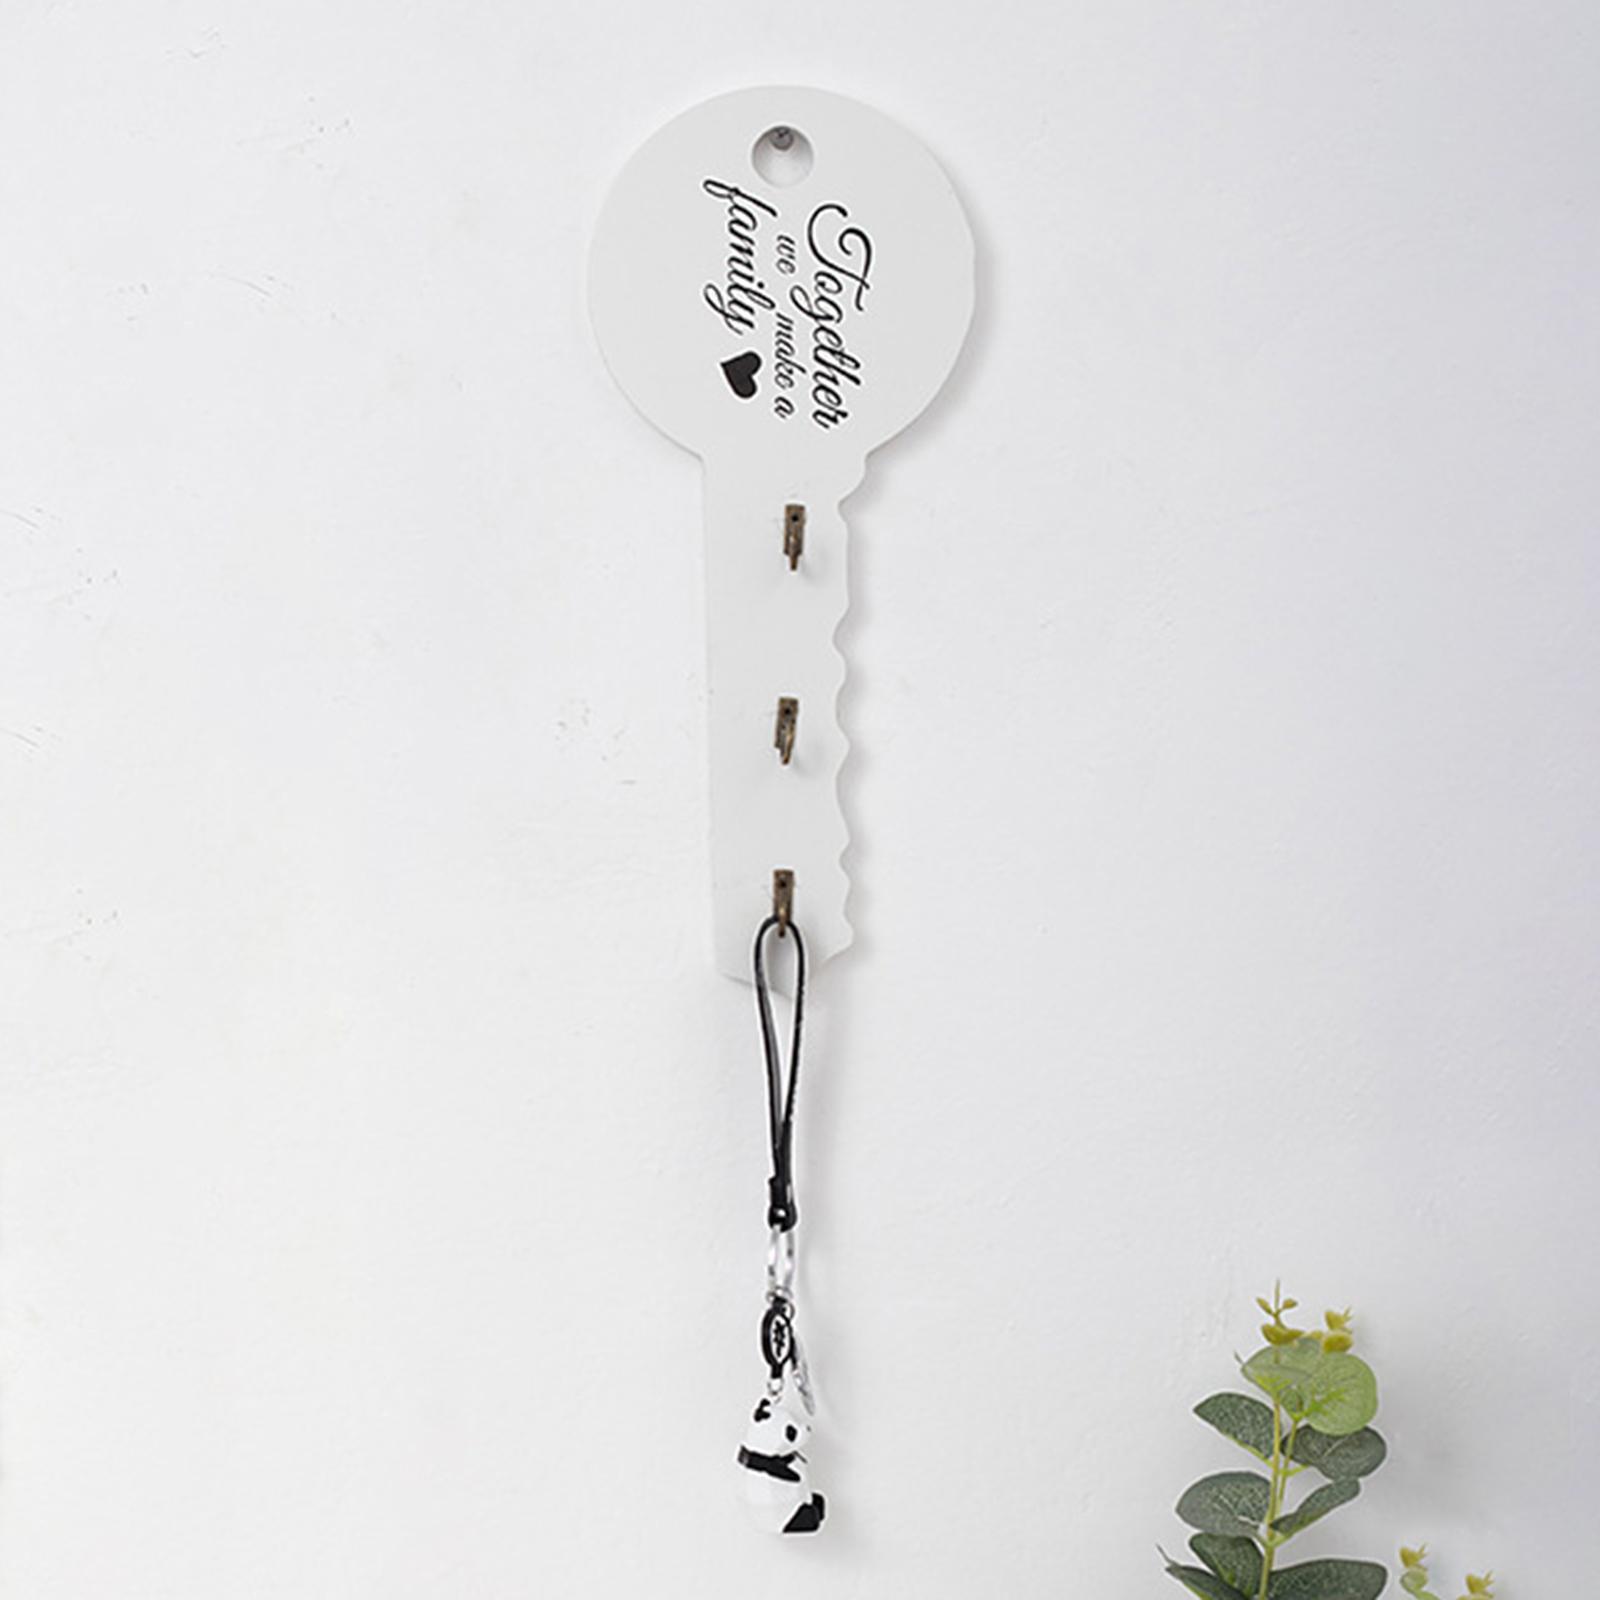 Wall Hook for Hanging Keys, Hats, Decorative Key Holder Storage Hanger Rack